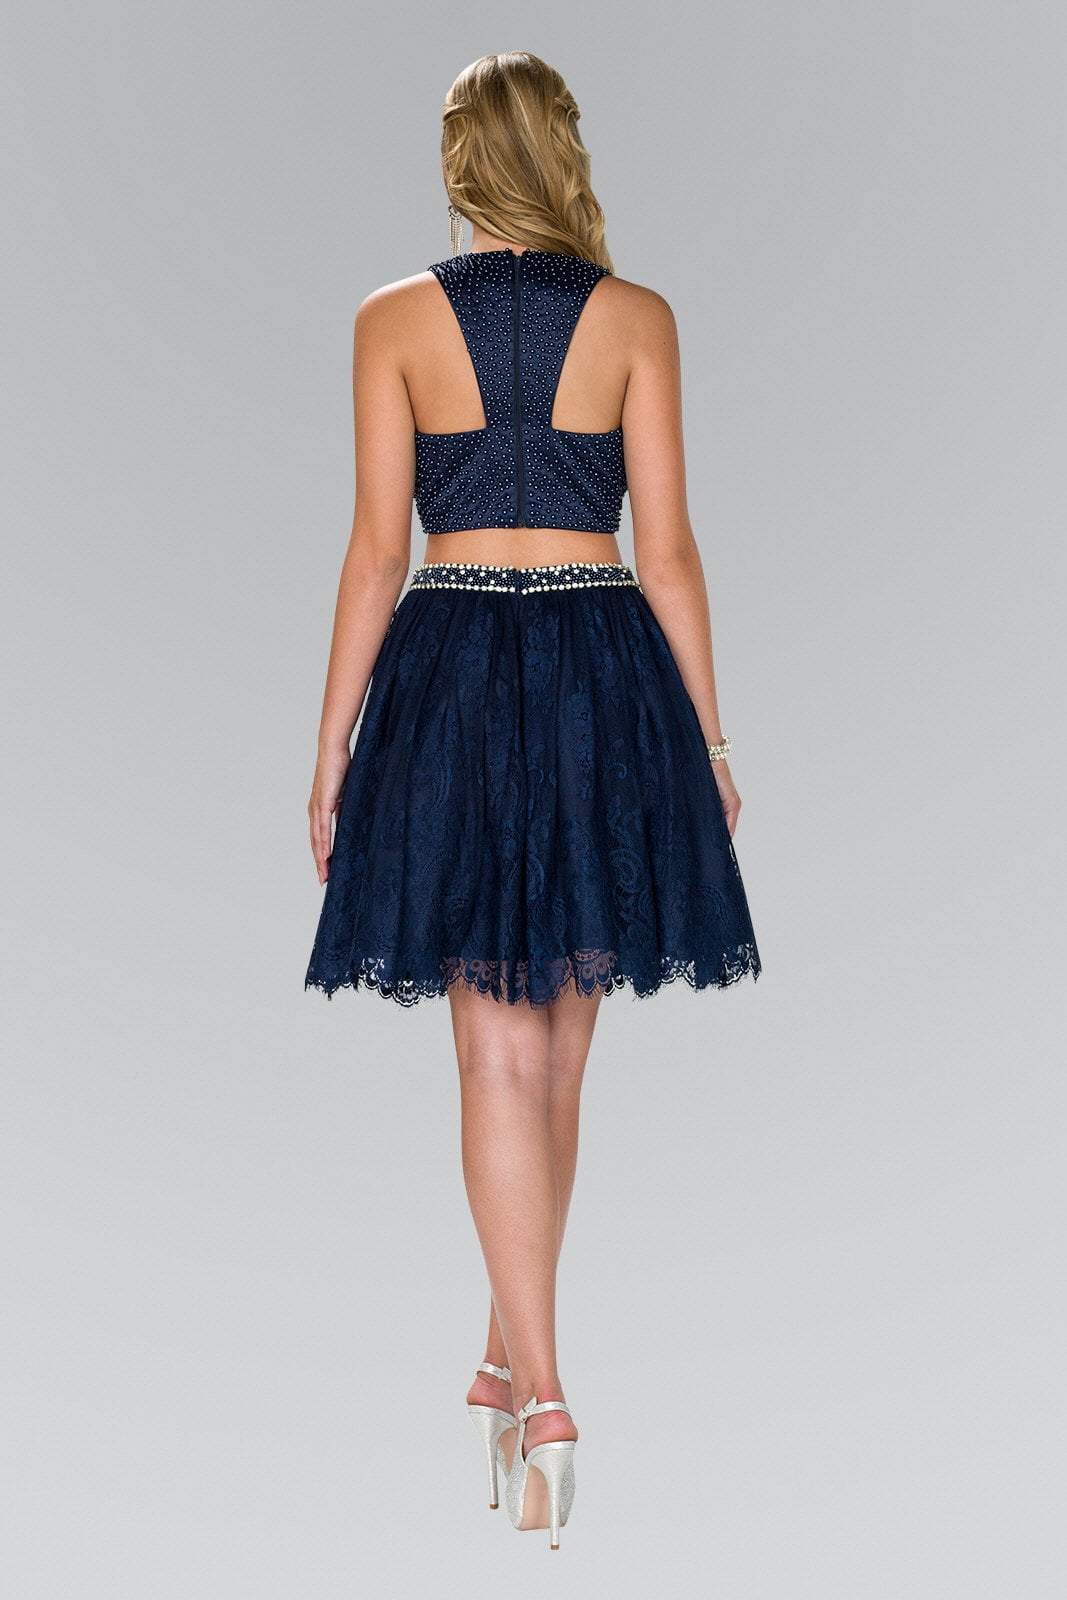 Elizabeth K - GS2404 Two Piece Beaded Lace A-line Dress In Blue